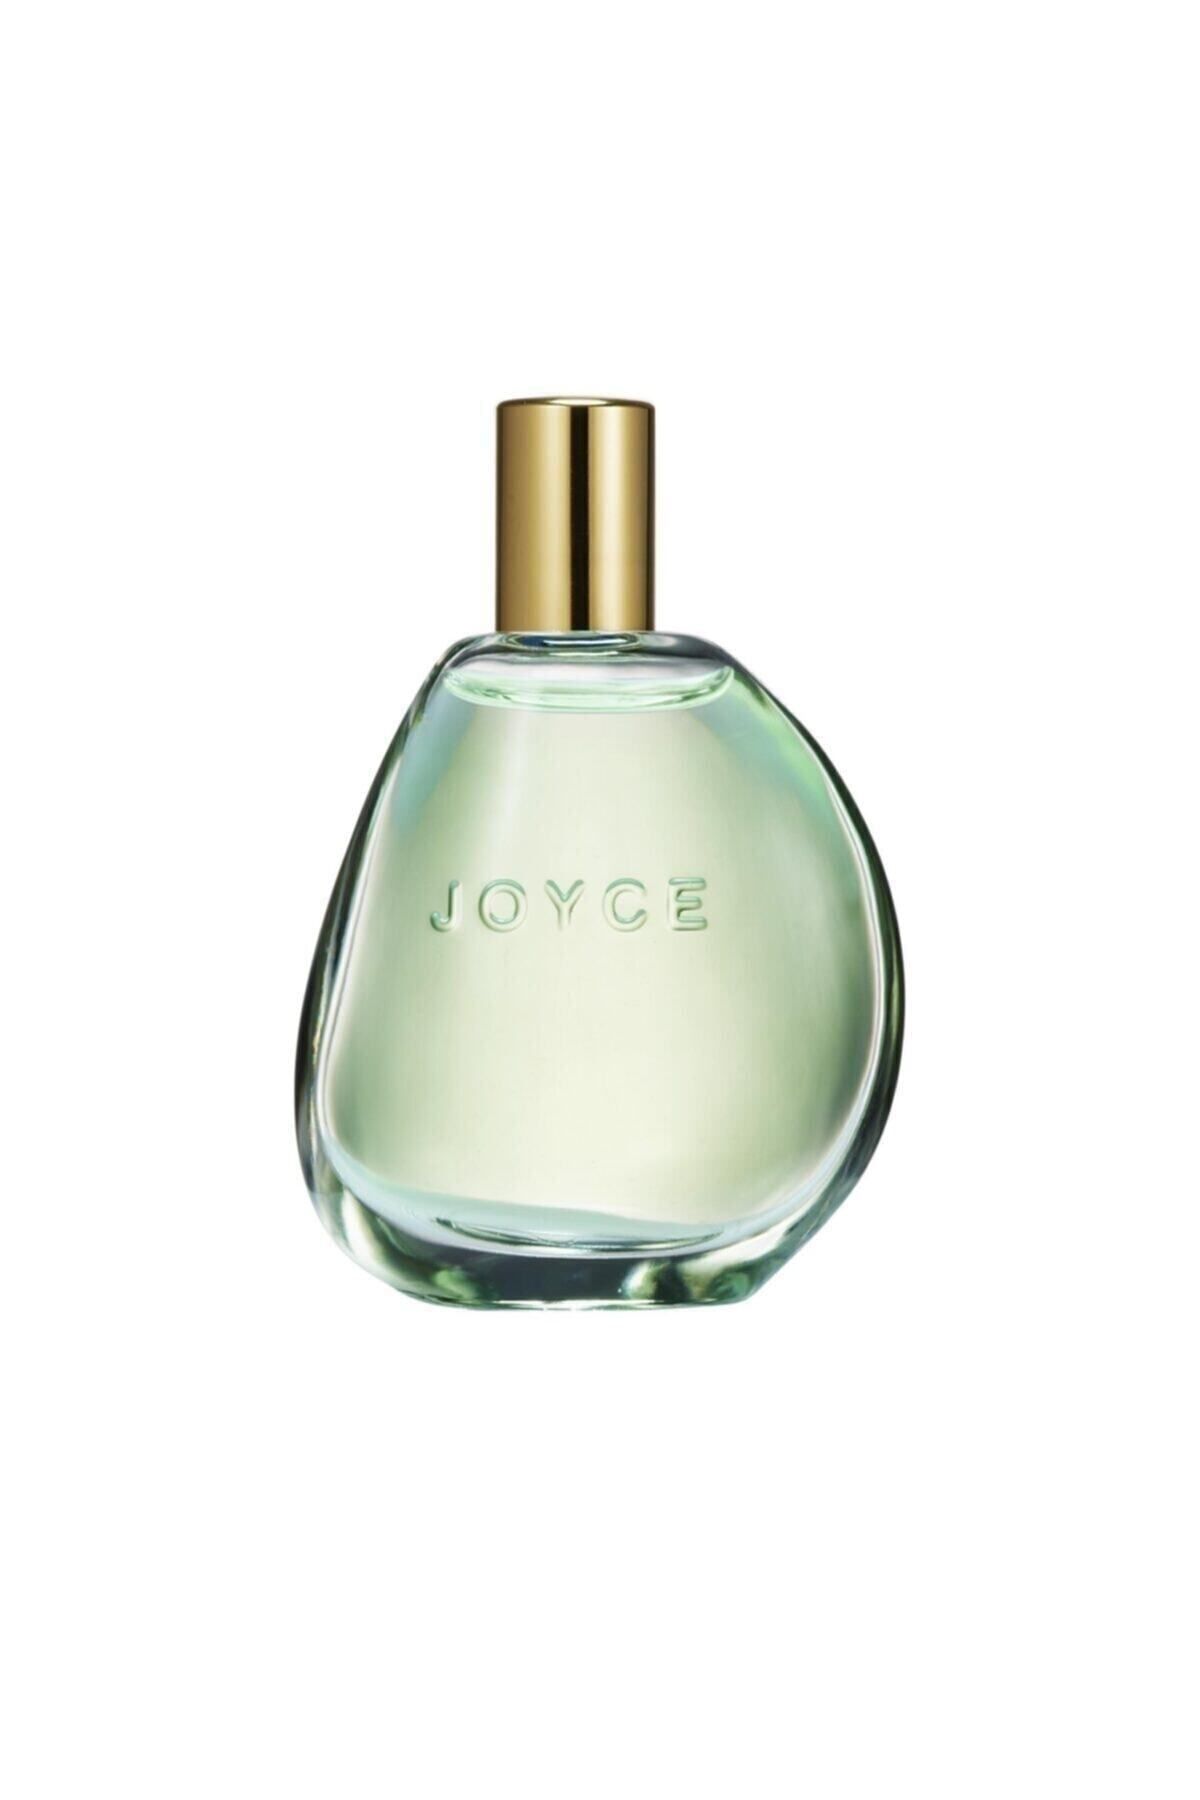 Oriflame Joyce Jade Edt 50 ml Kadın Parfümü ELİTKOZMETİK09912